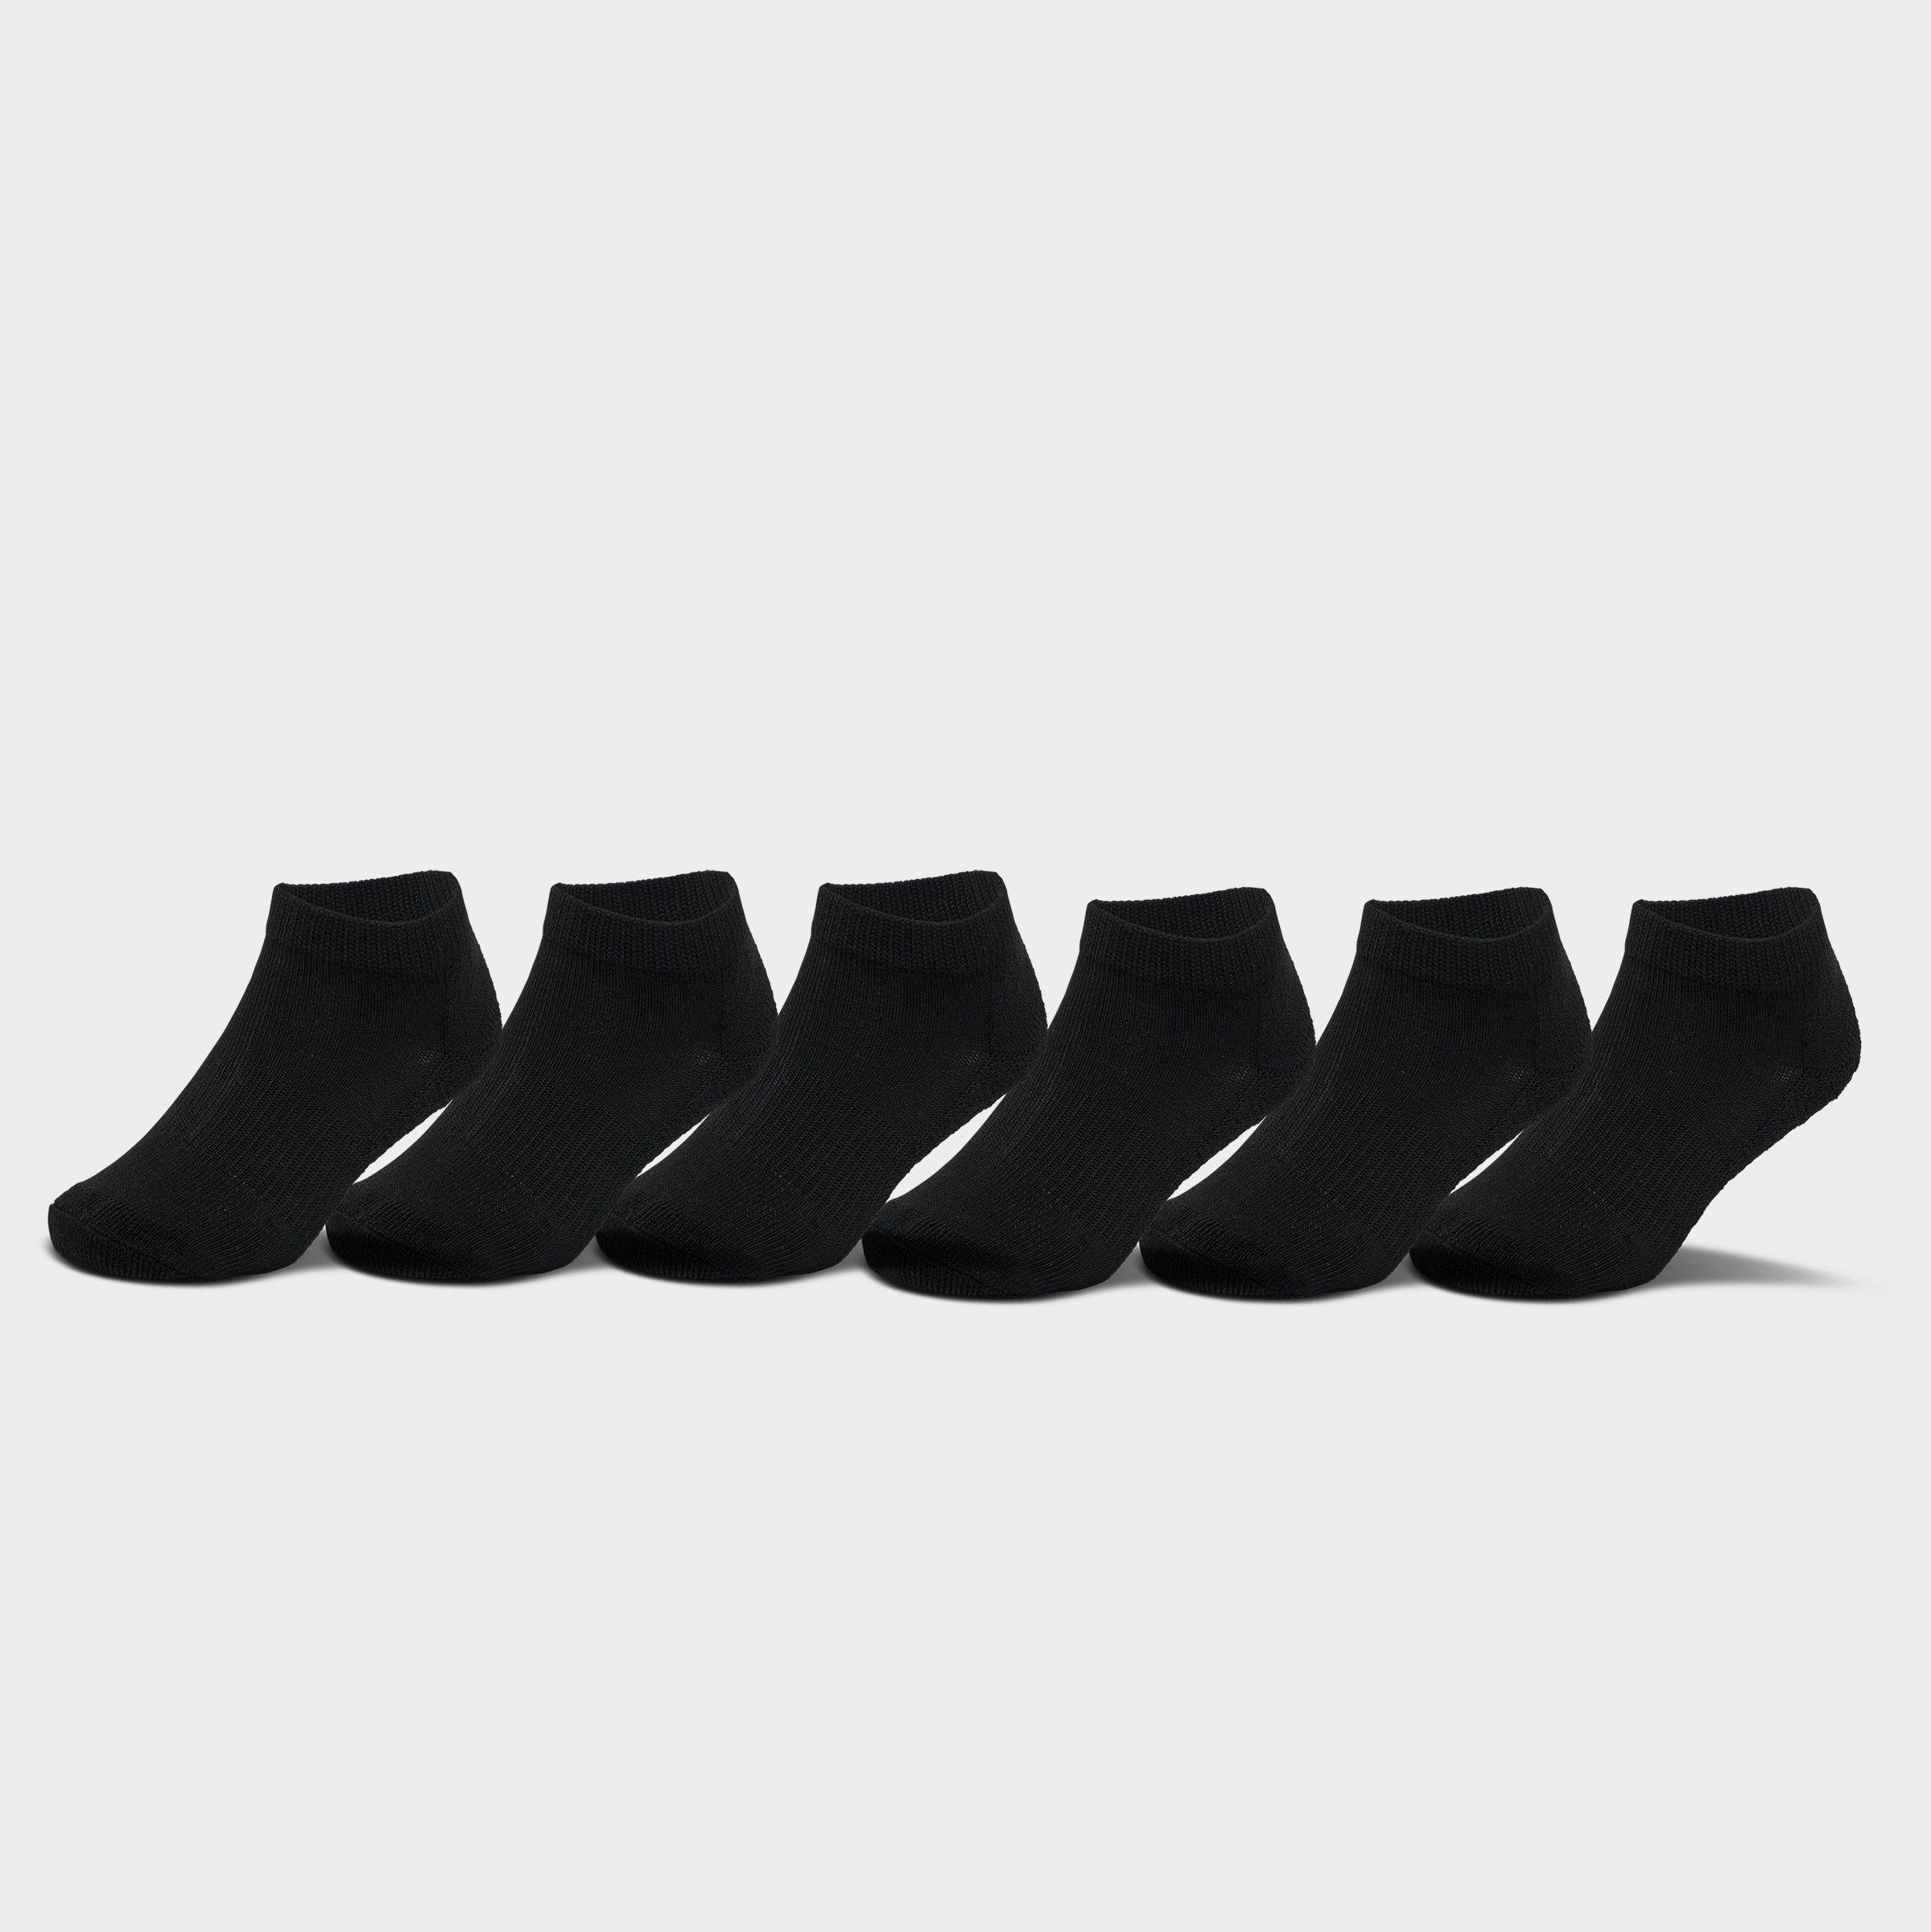 Finish Line Sonneti Men's No-show Socks (6-pack) In Black